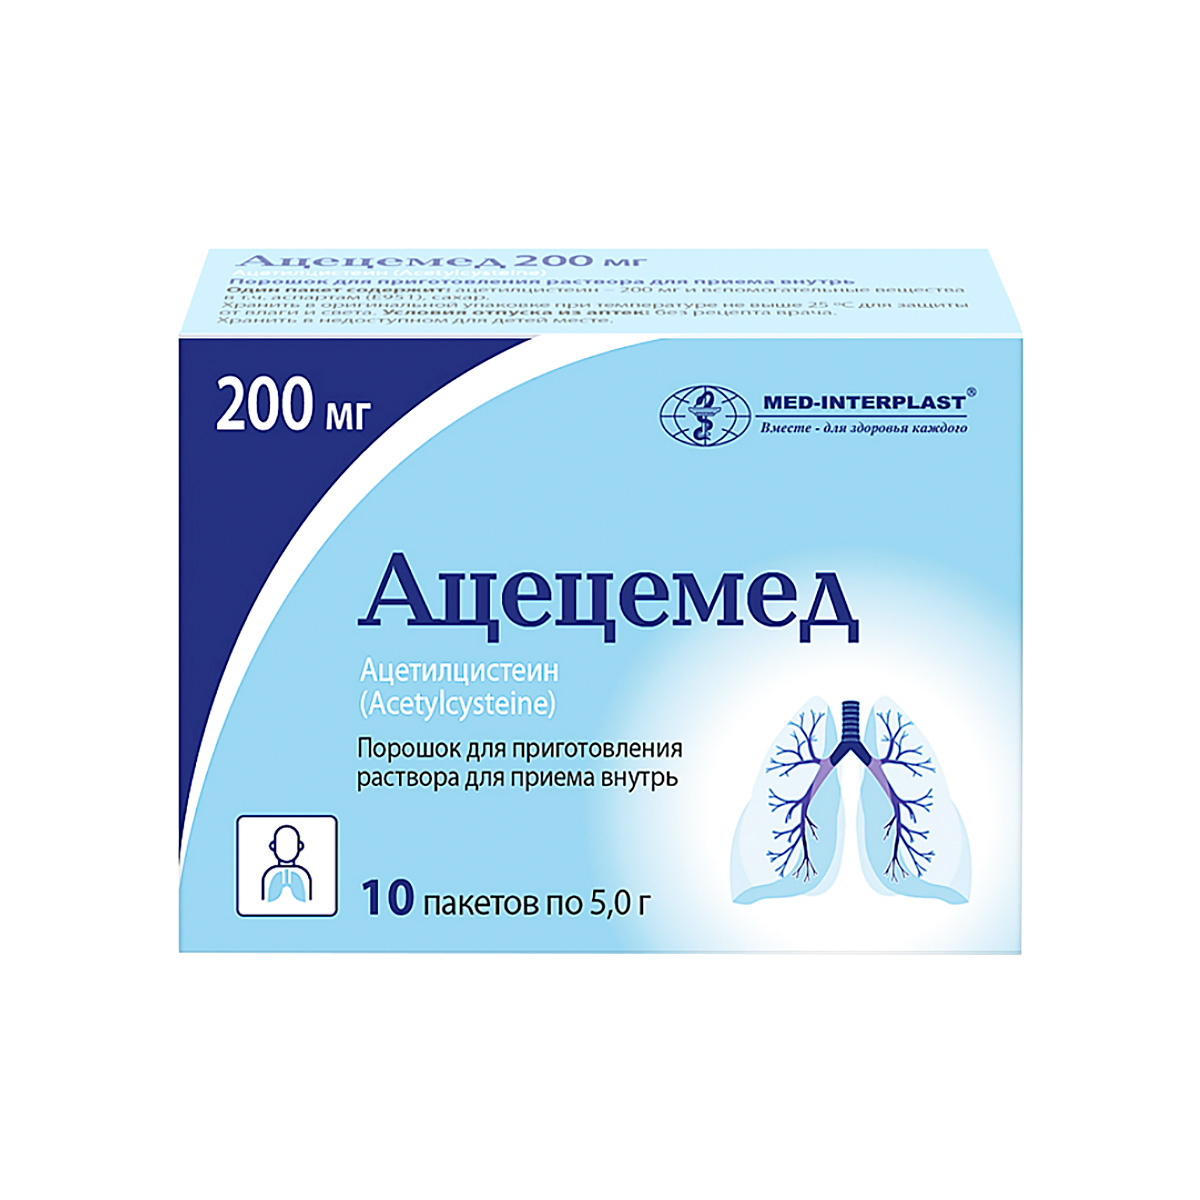 Ацецемед 200 мг порошок для приготовления раствора для приема внутрь пакет 10 шт